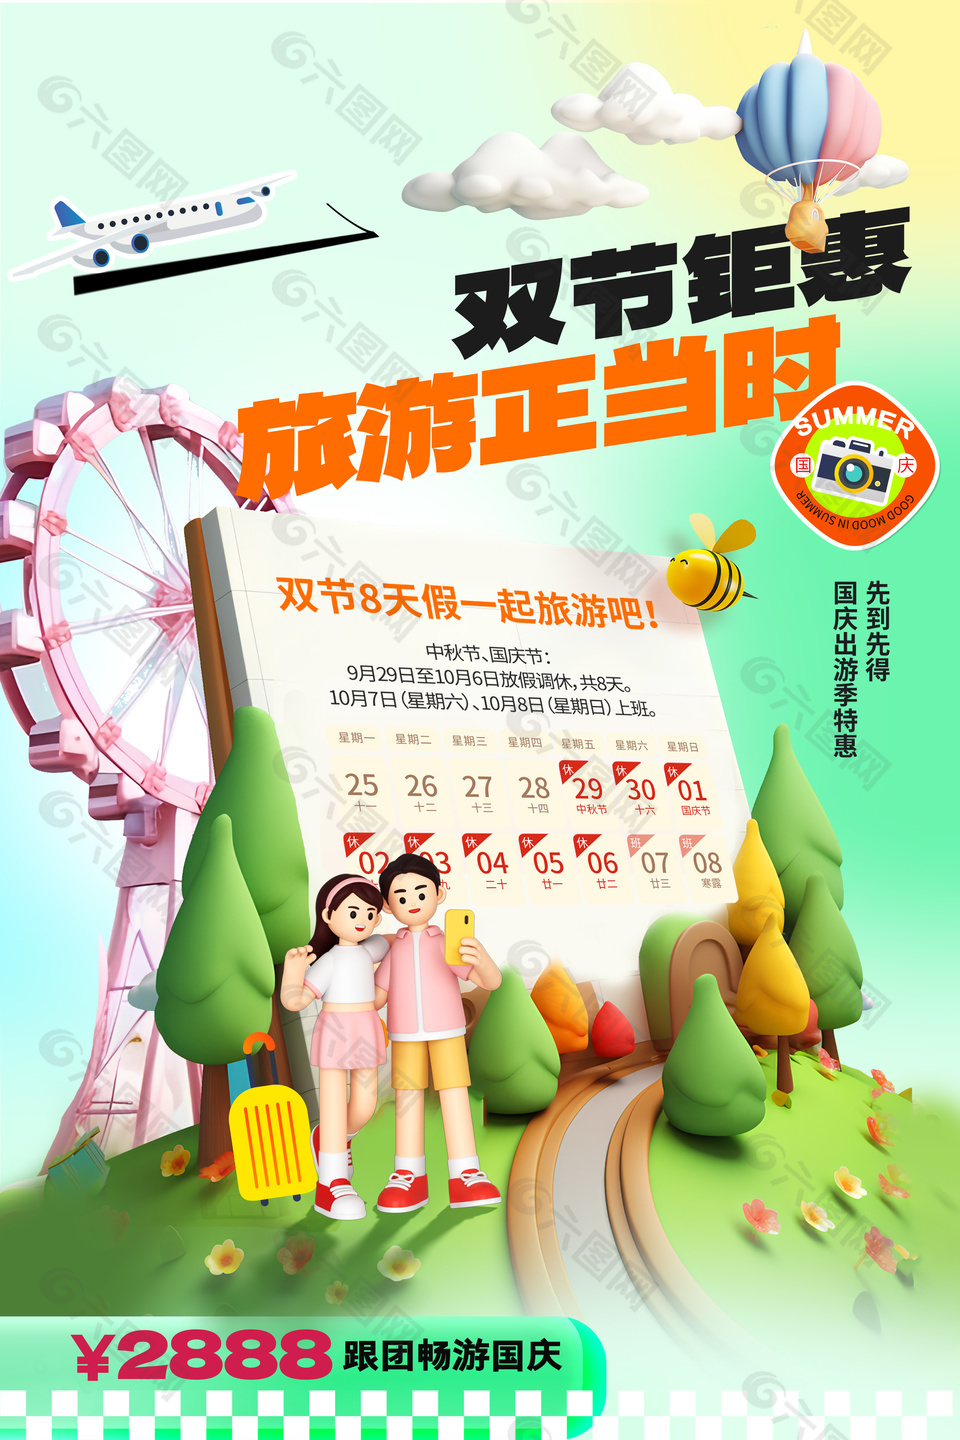 国庆出游季特惠创意3d彩色简约海报下载